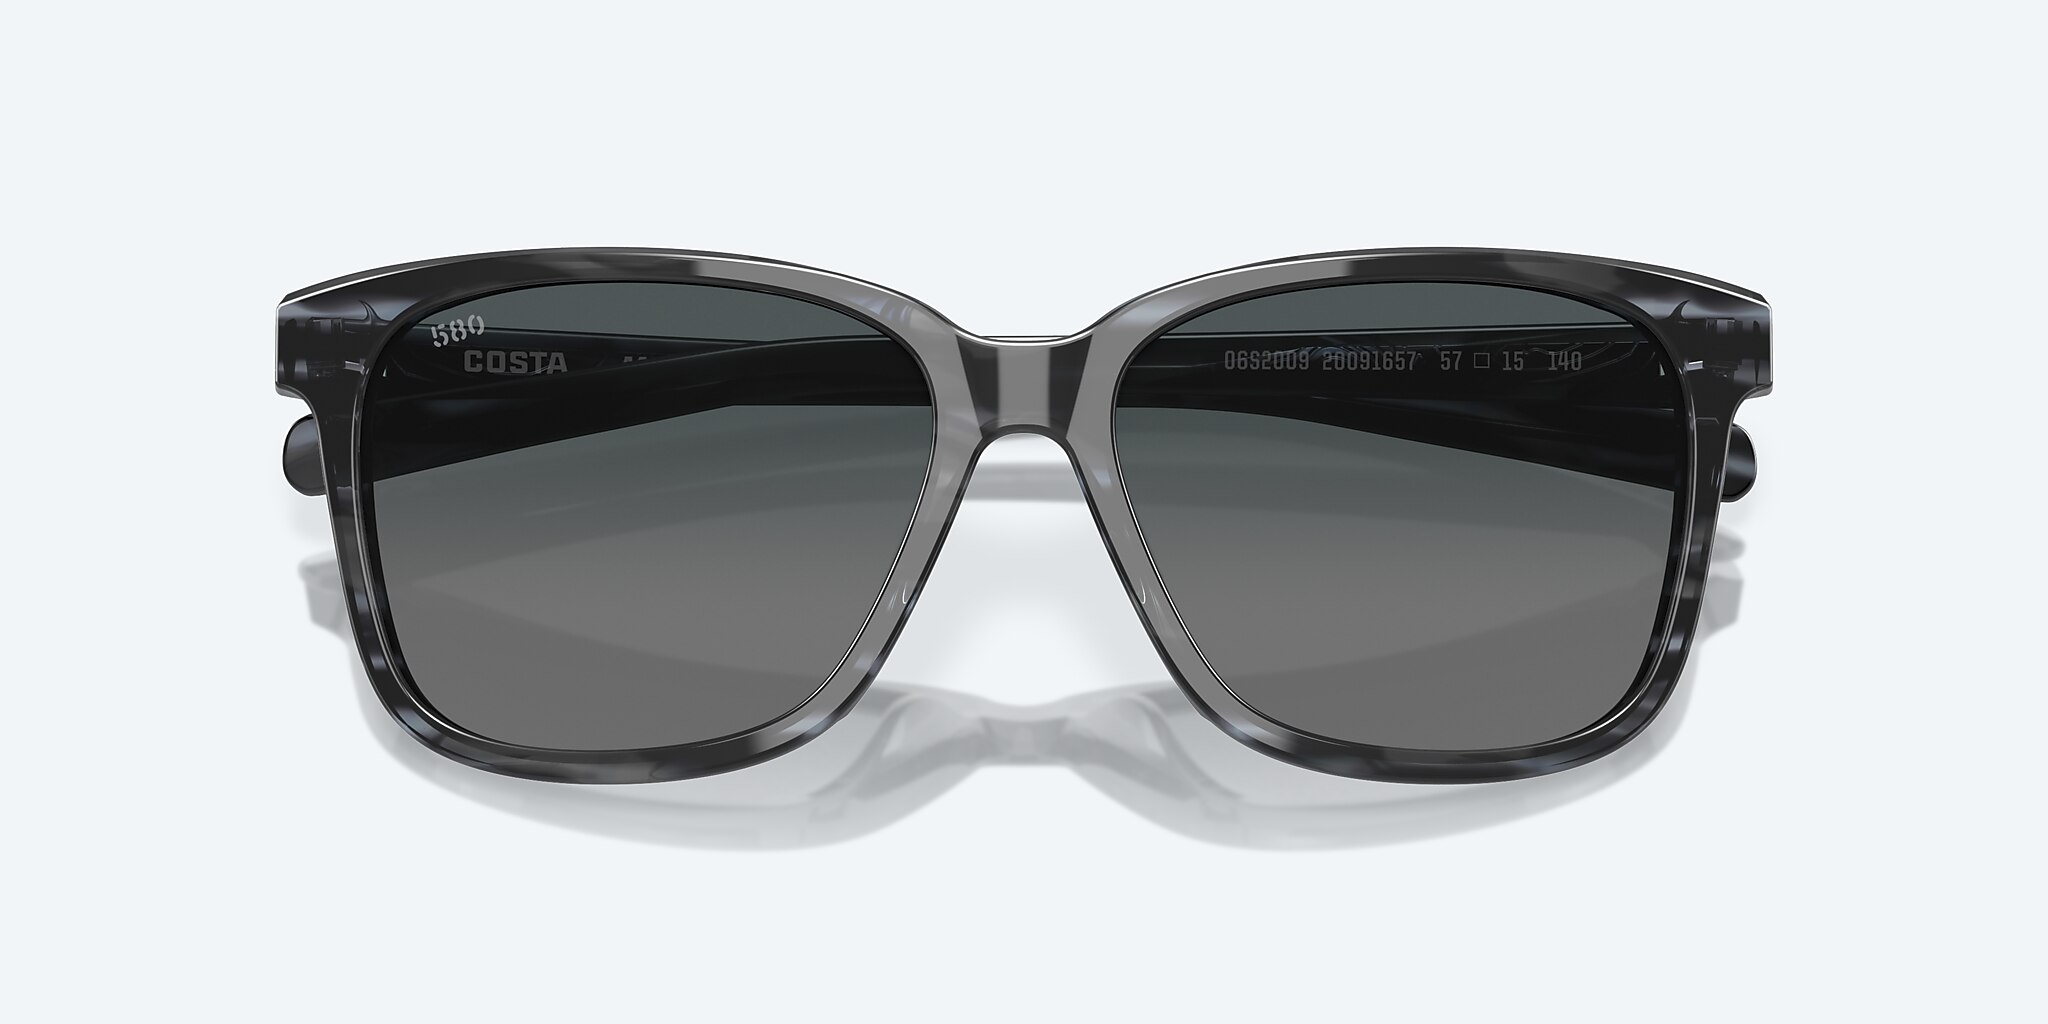 580p Polarized Sunglasses Costas Designer Sunglasses For Men Women Tr90  Frame Uv400 Lens Sports Driving Fishing Glassesplpa From Designera, $20.73